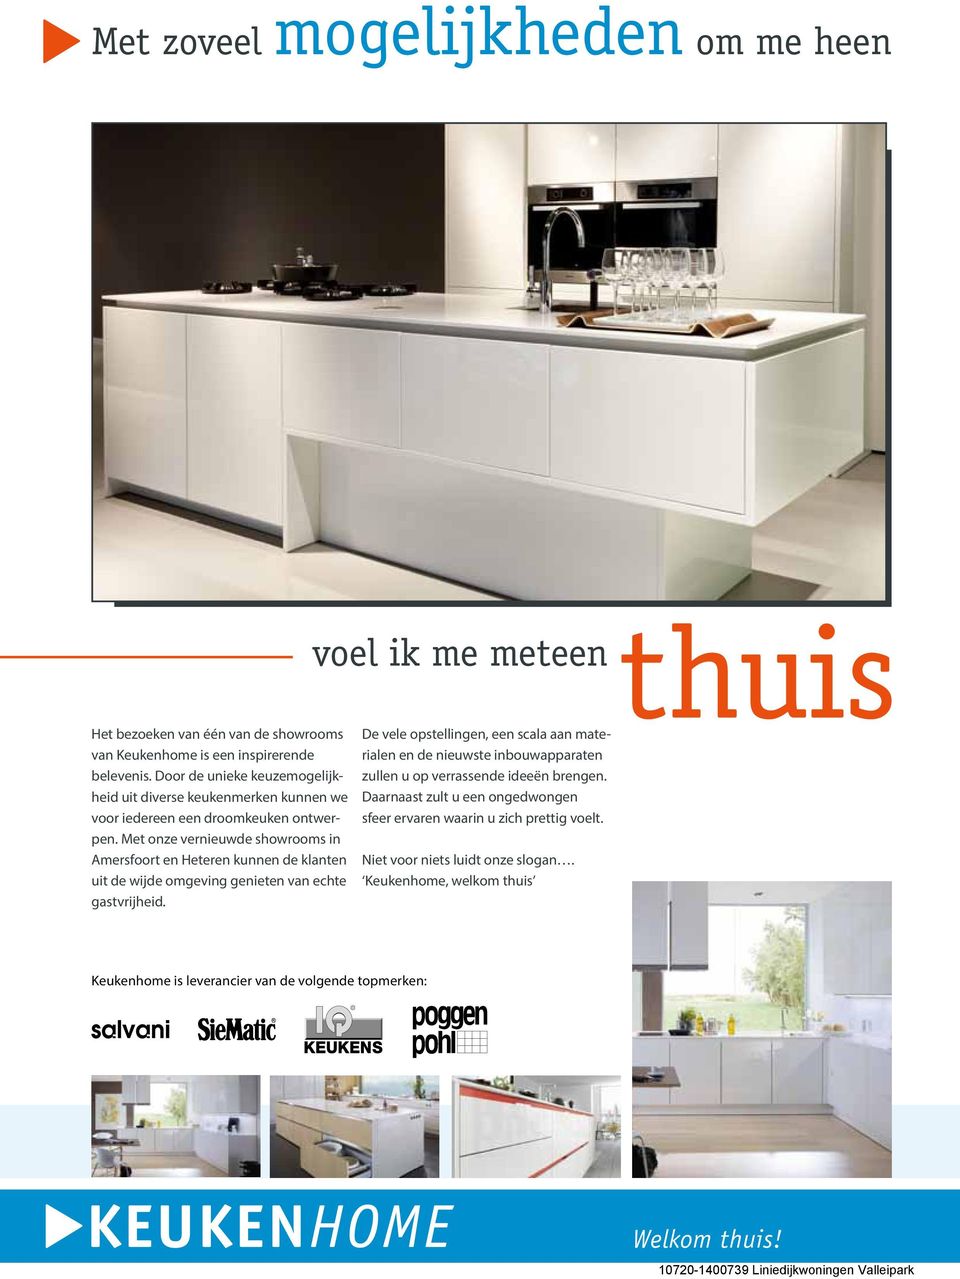 Met onze vernieuwde showrooms in Amersfoort en Heteren kunnen de klanten uit de wijde omgeving genieten van echte gastvrijheid.